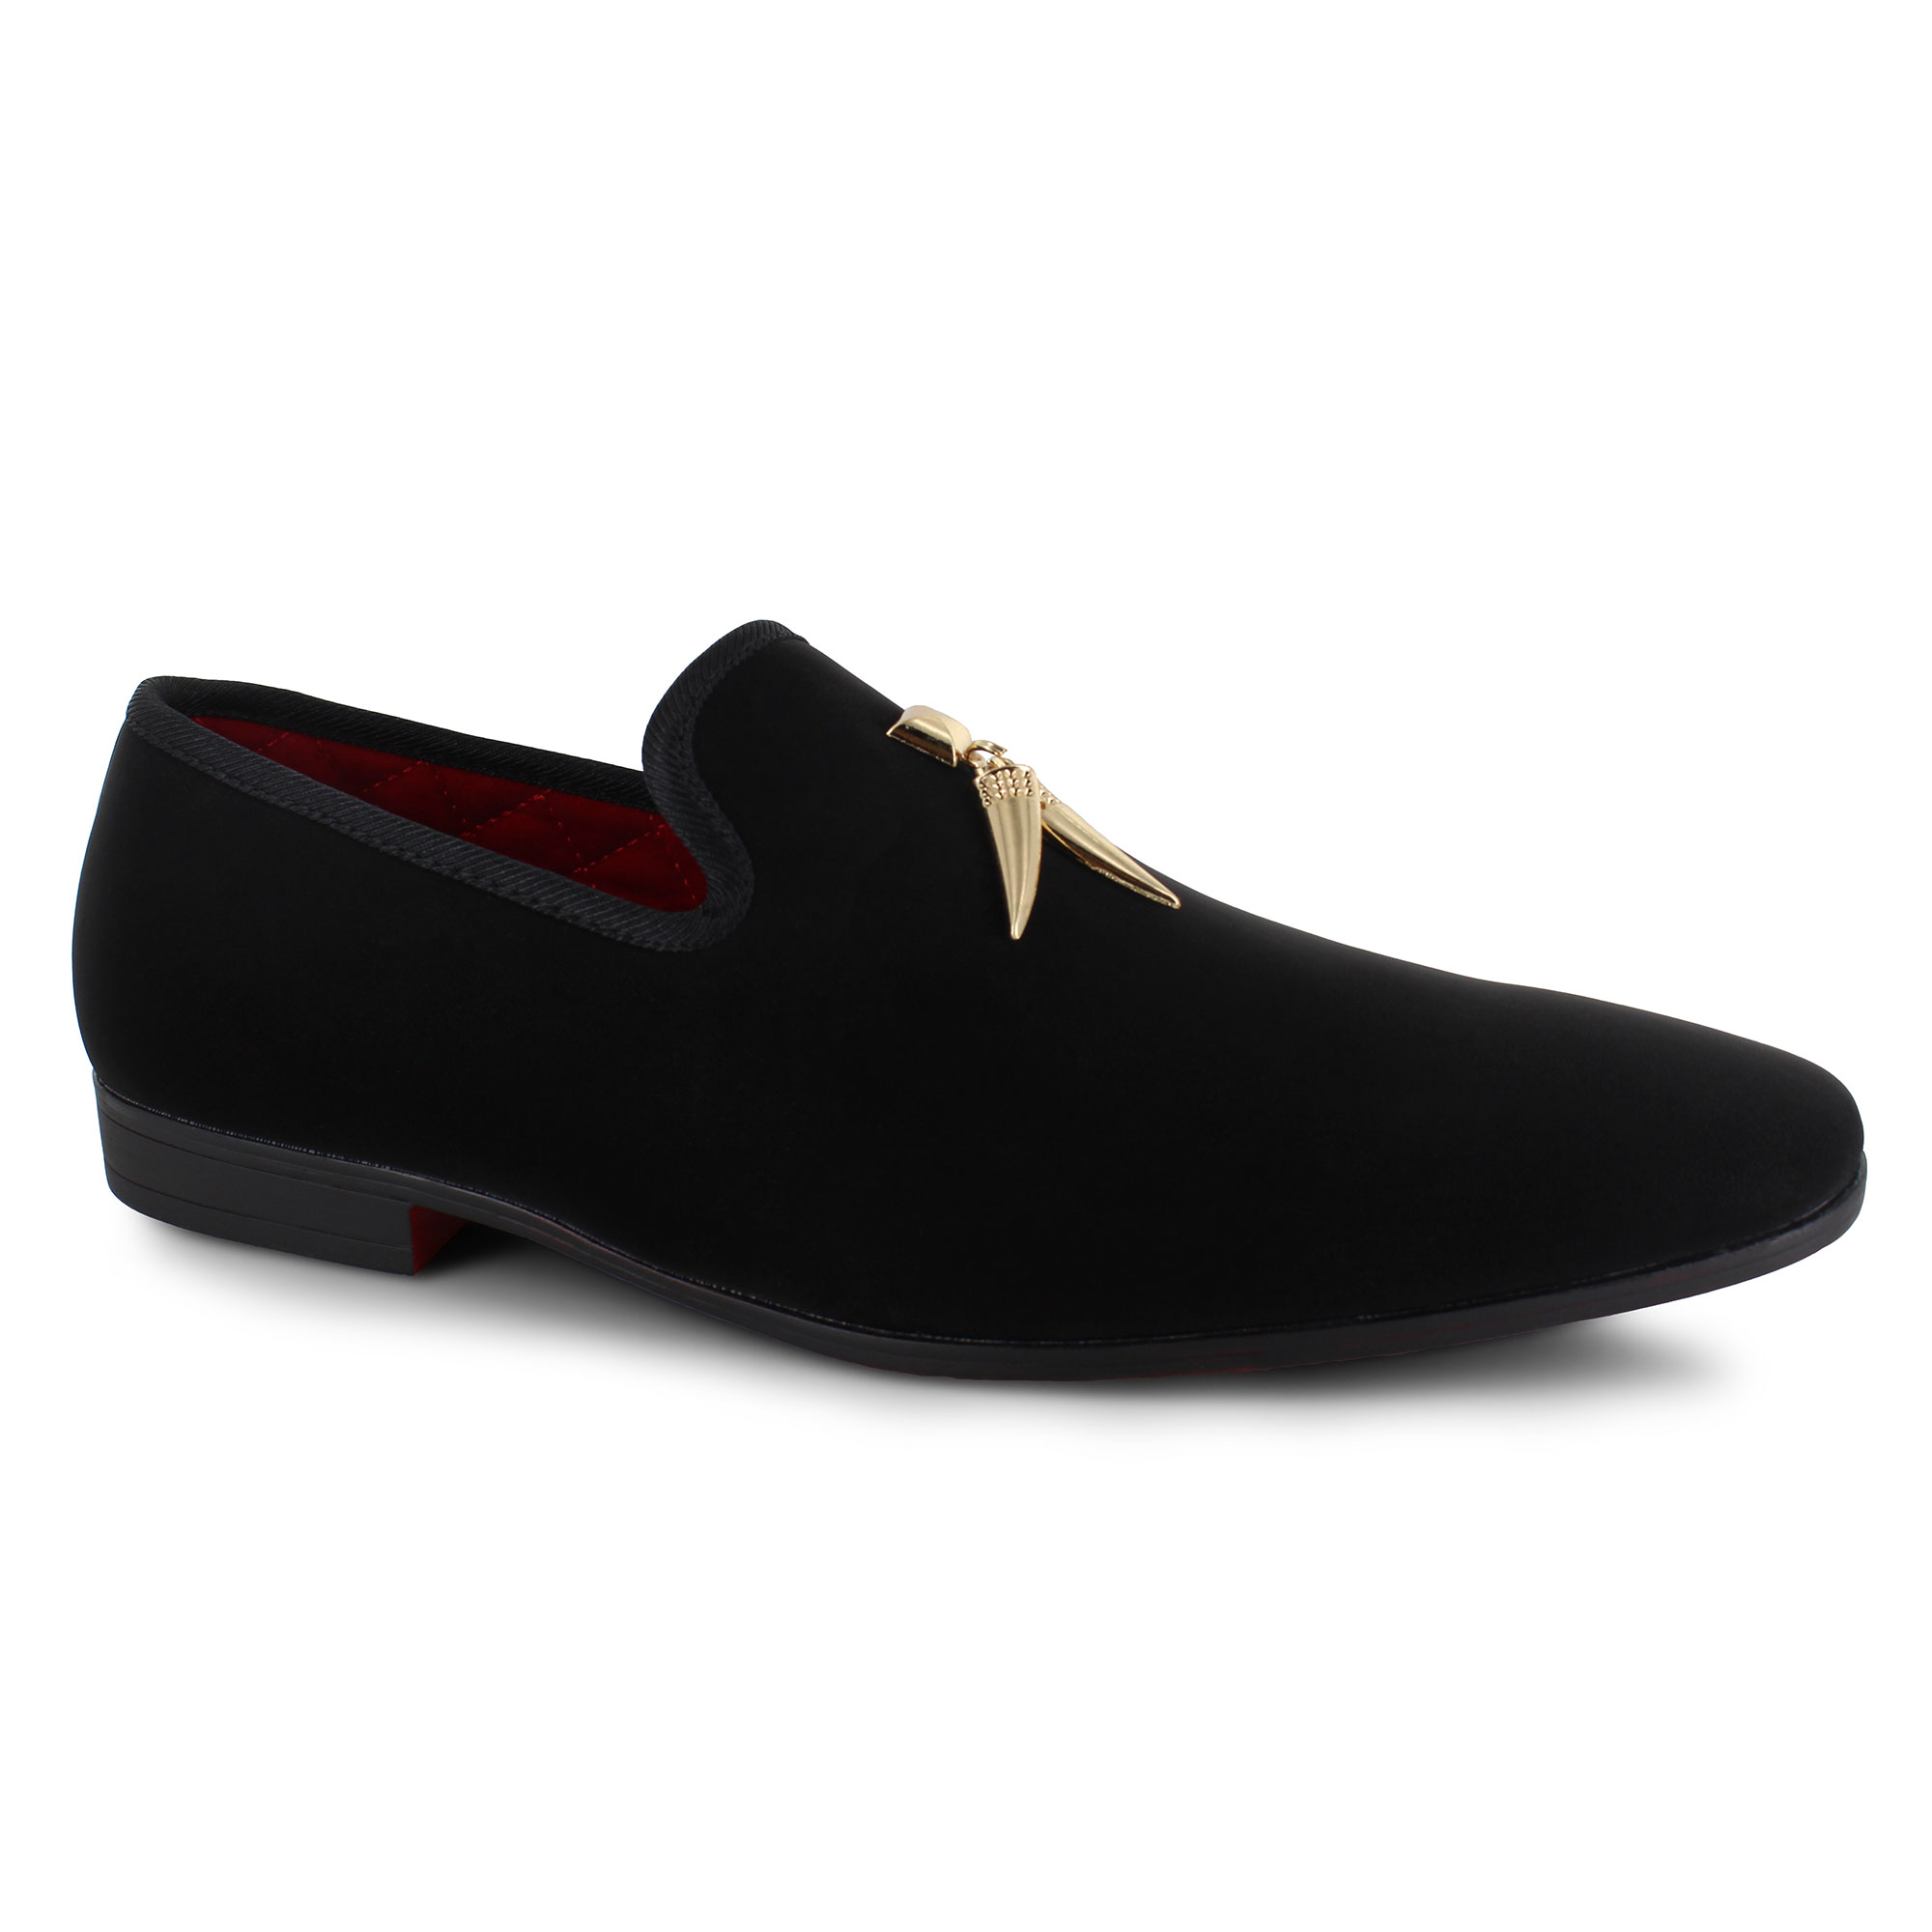 Buy > la milano dress shoes > in stock